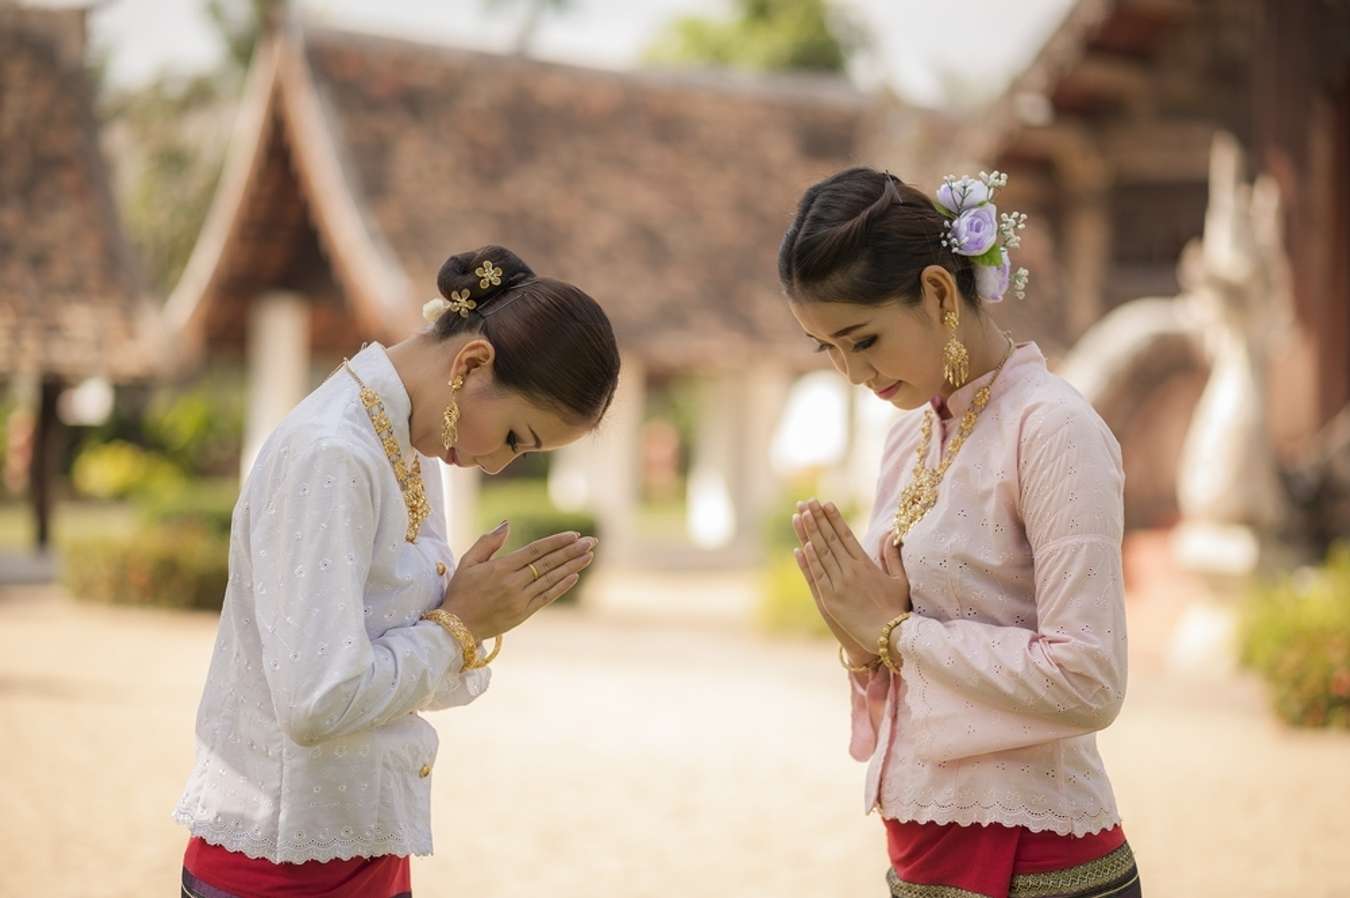 Văn hóa chào hỏi Thái Lan